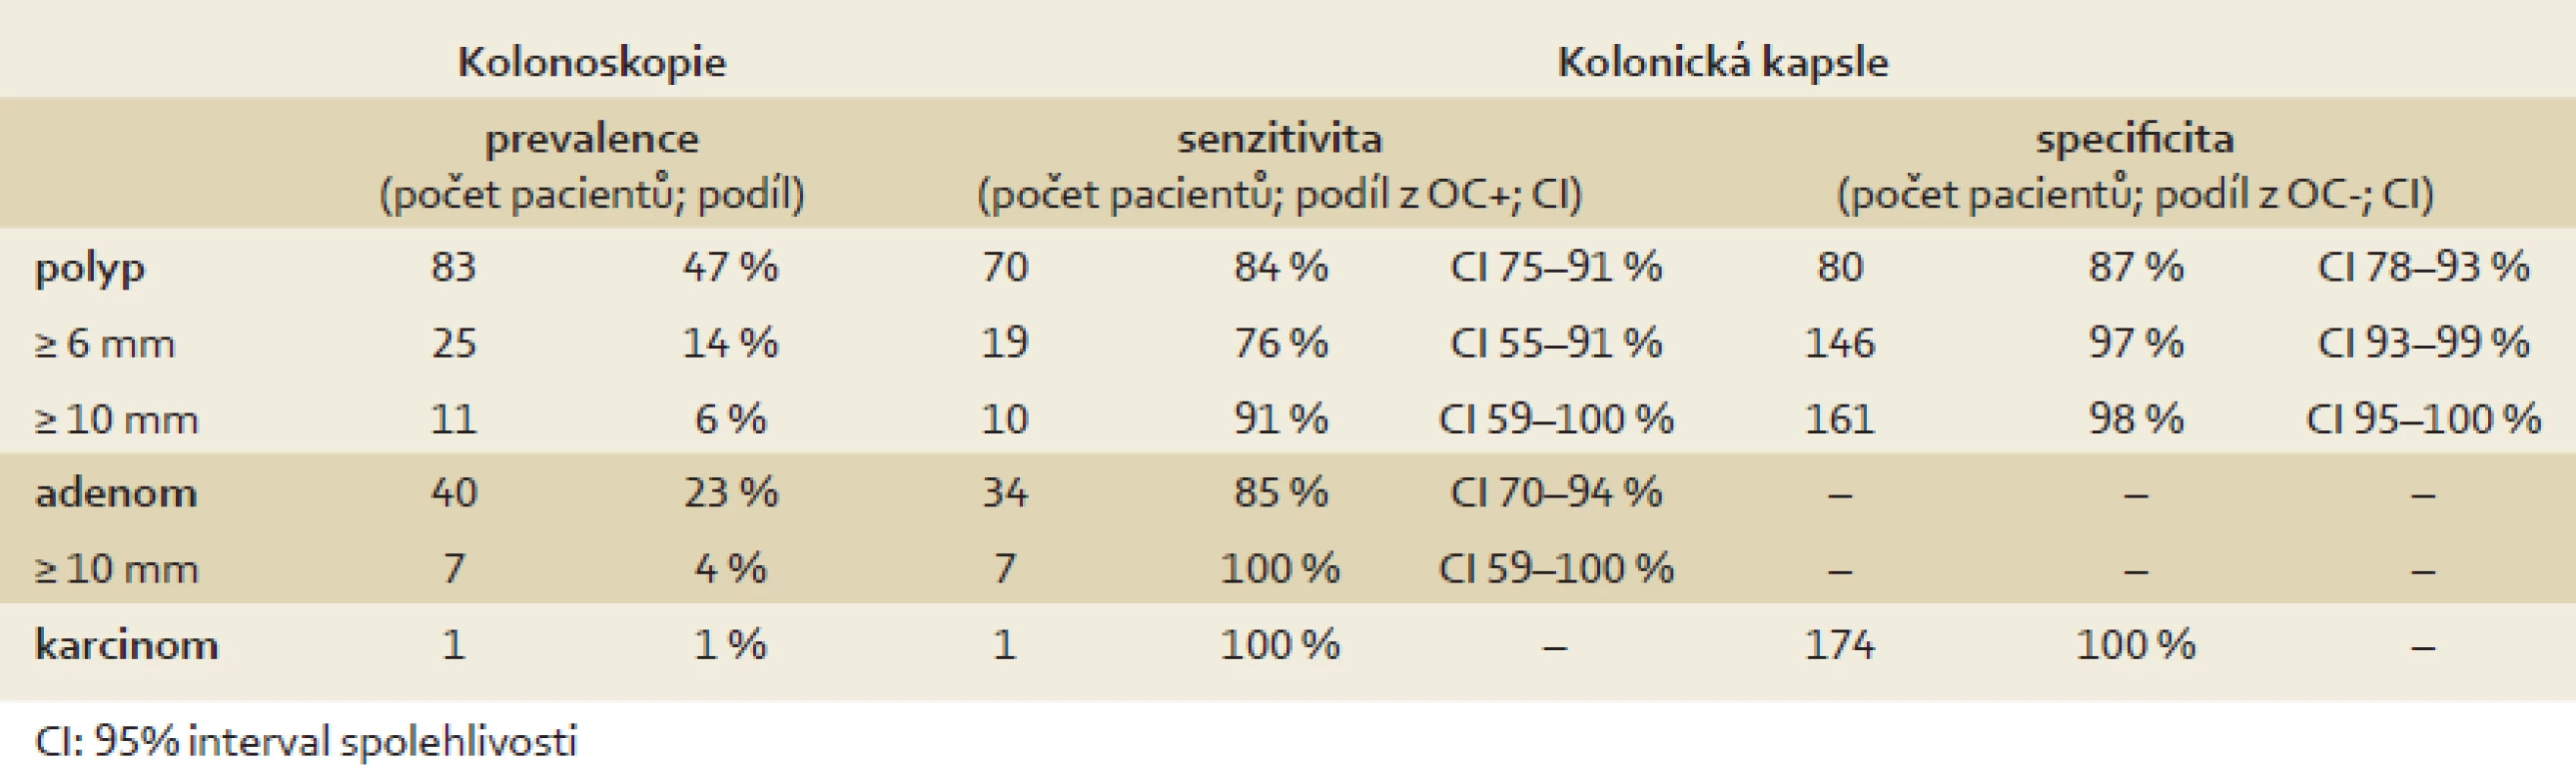 Porovnání kolonické kapsle a optické kolonoskopie v detekci kolorektální neoplazie (per patient analýza, n = 175).
Tab. 2. Accuracy of colon capsule in colorectal neoplasia detection (per patient analyses, n = 175).